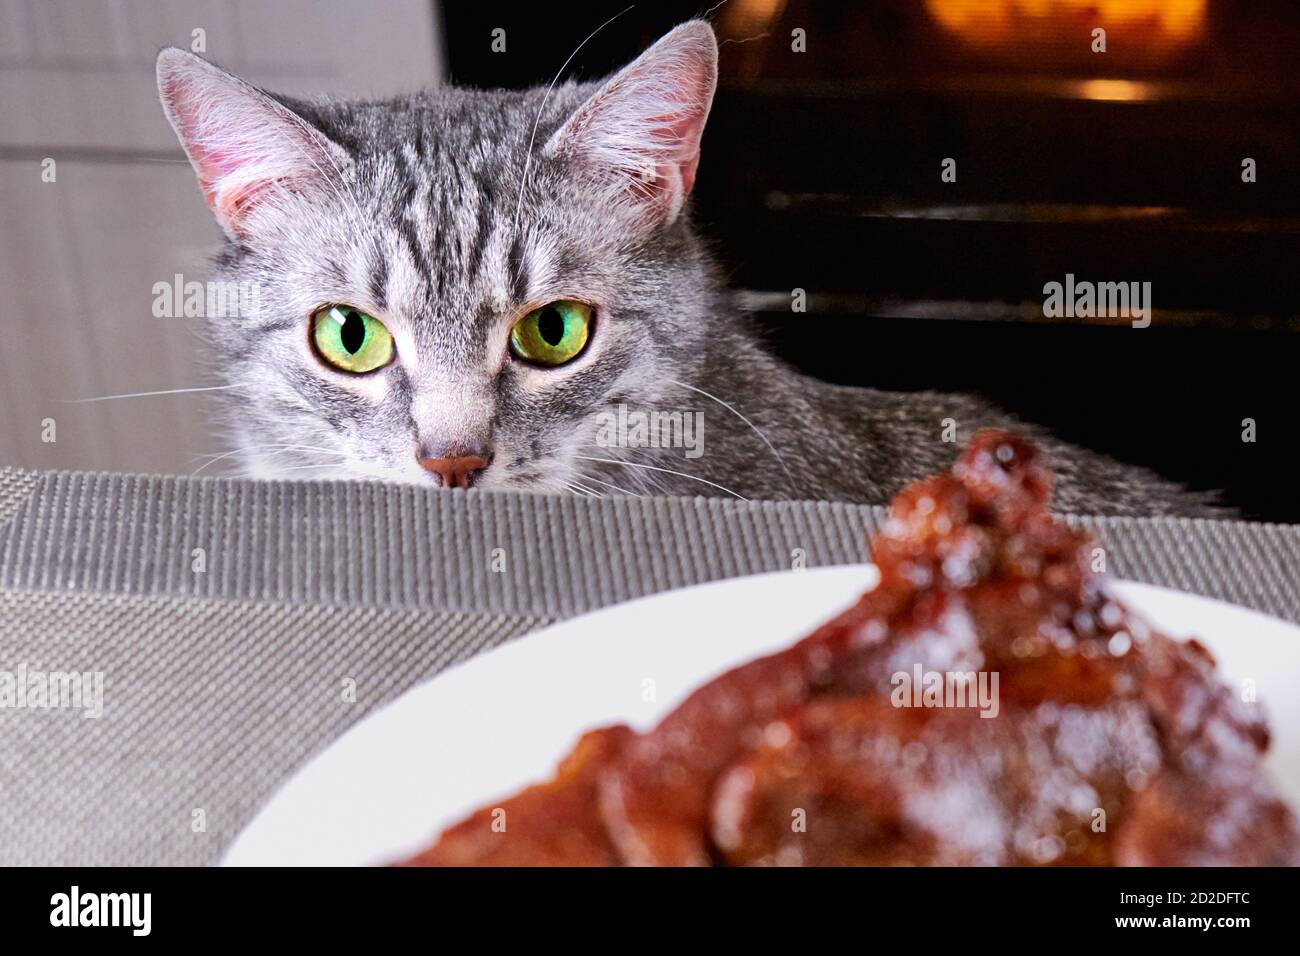 Katzenhautnah Blicke auf Stückfleisch. Haustierwache hinter dem Küchentisch. Graue Katze schaut auf den Hintergrund der Küche und ein großes Stück Fleisch auf einem Teller. Ba Stockfoto